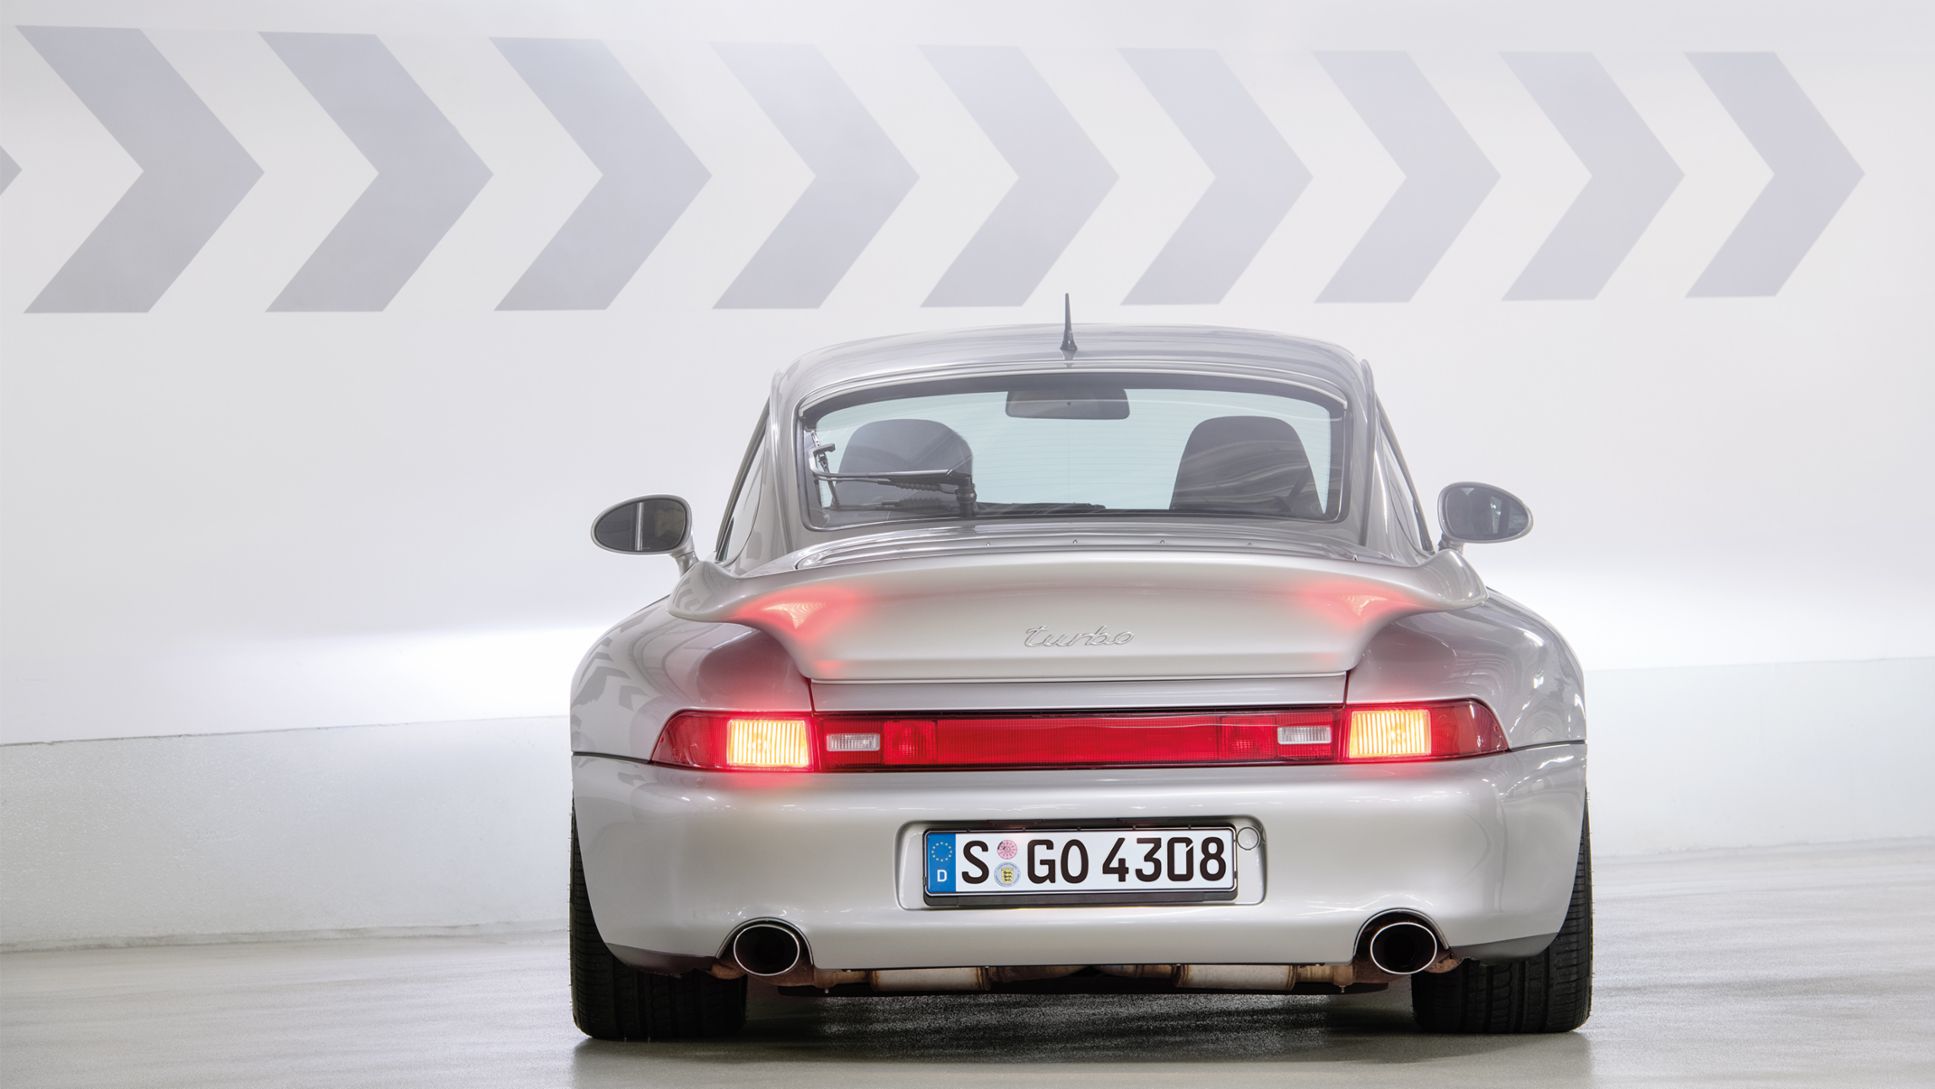 911 Turbo, Baujahr 1995, 2020, Porsche AG